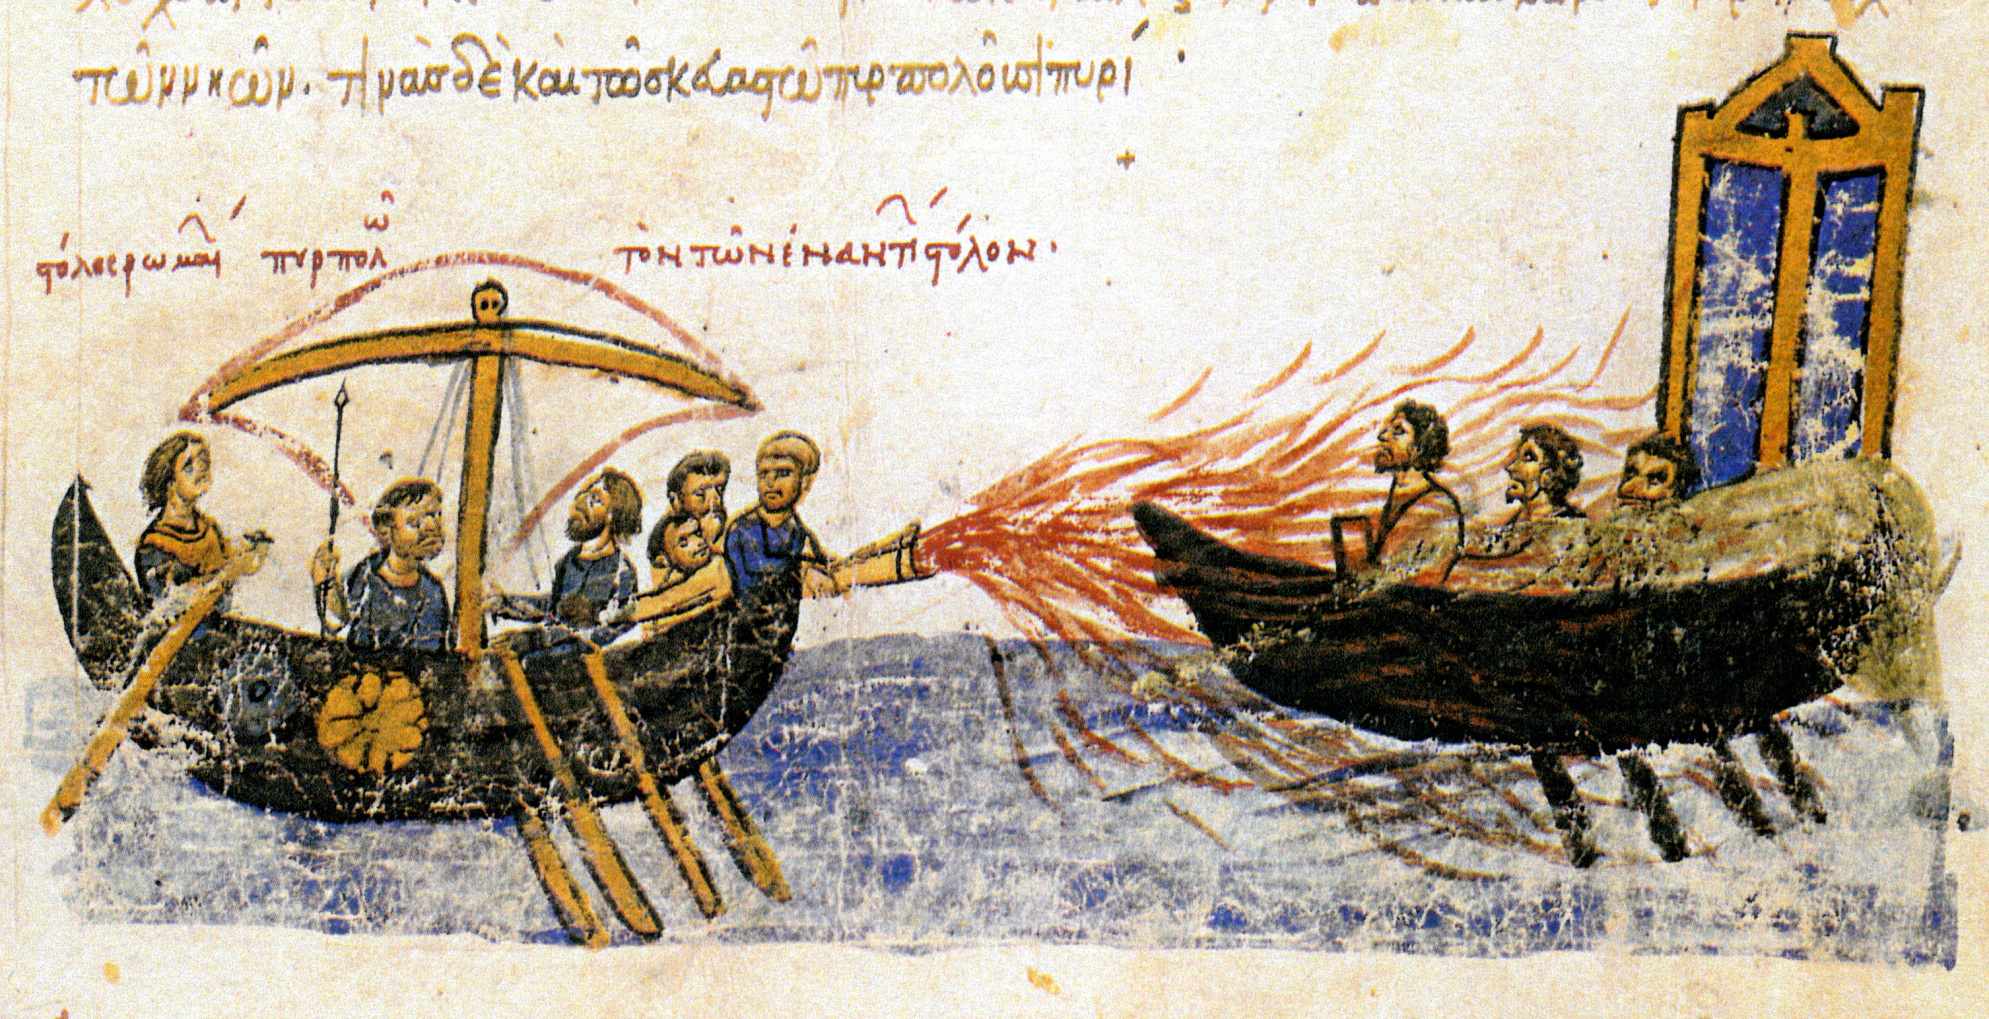 "Hạm đội La Mã thiêu rụi hạm đội đối diện" - Một con tàu Byzantine sử dụng hỏa lực của Hy Lạp chống lại một con tàu của quân nổi dậy Thomas the Slav, 821. Hình minh họa thế kỷ 12 từ Madrid Skylitzes.